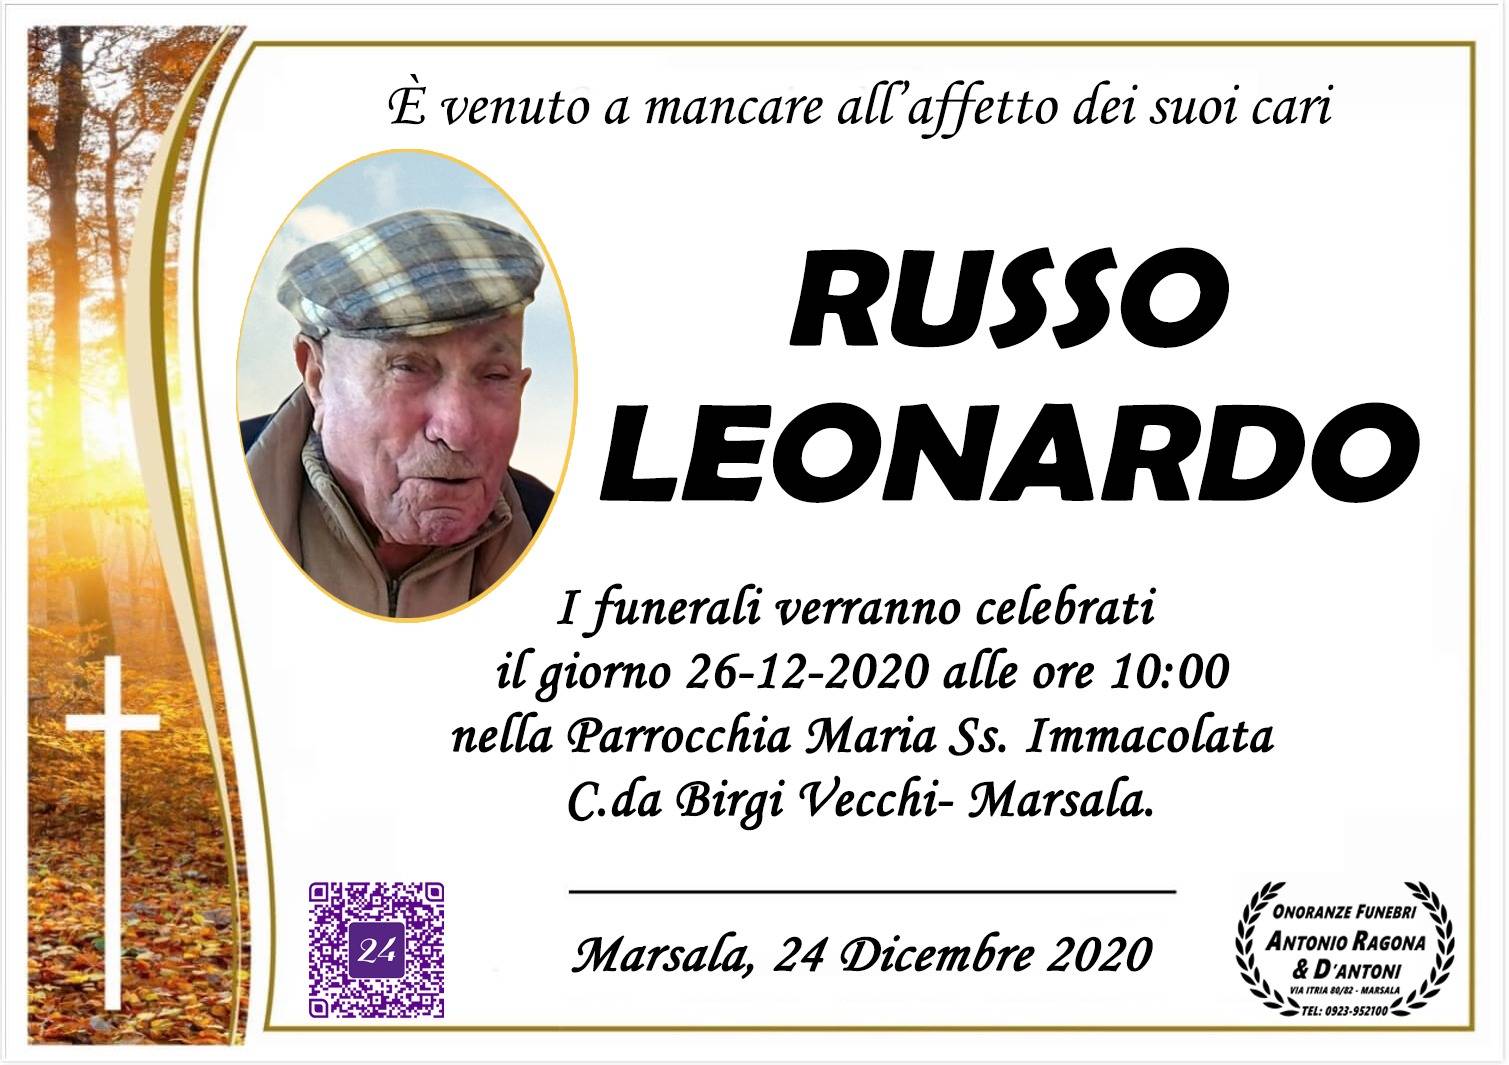 Leonardo Russo